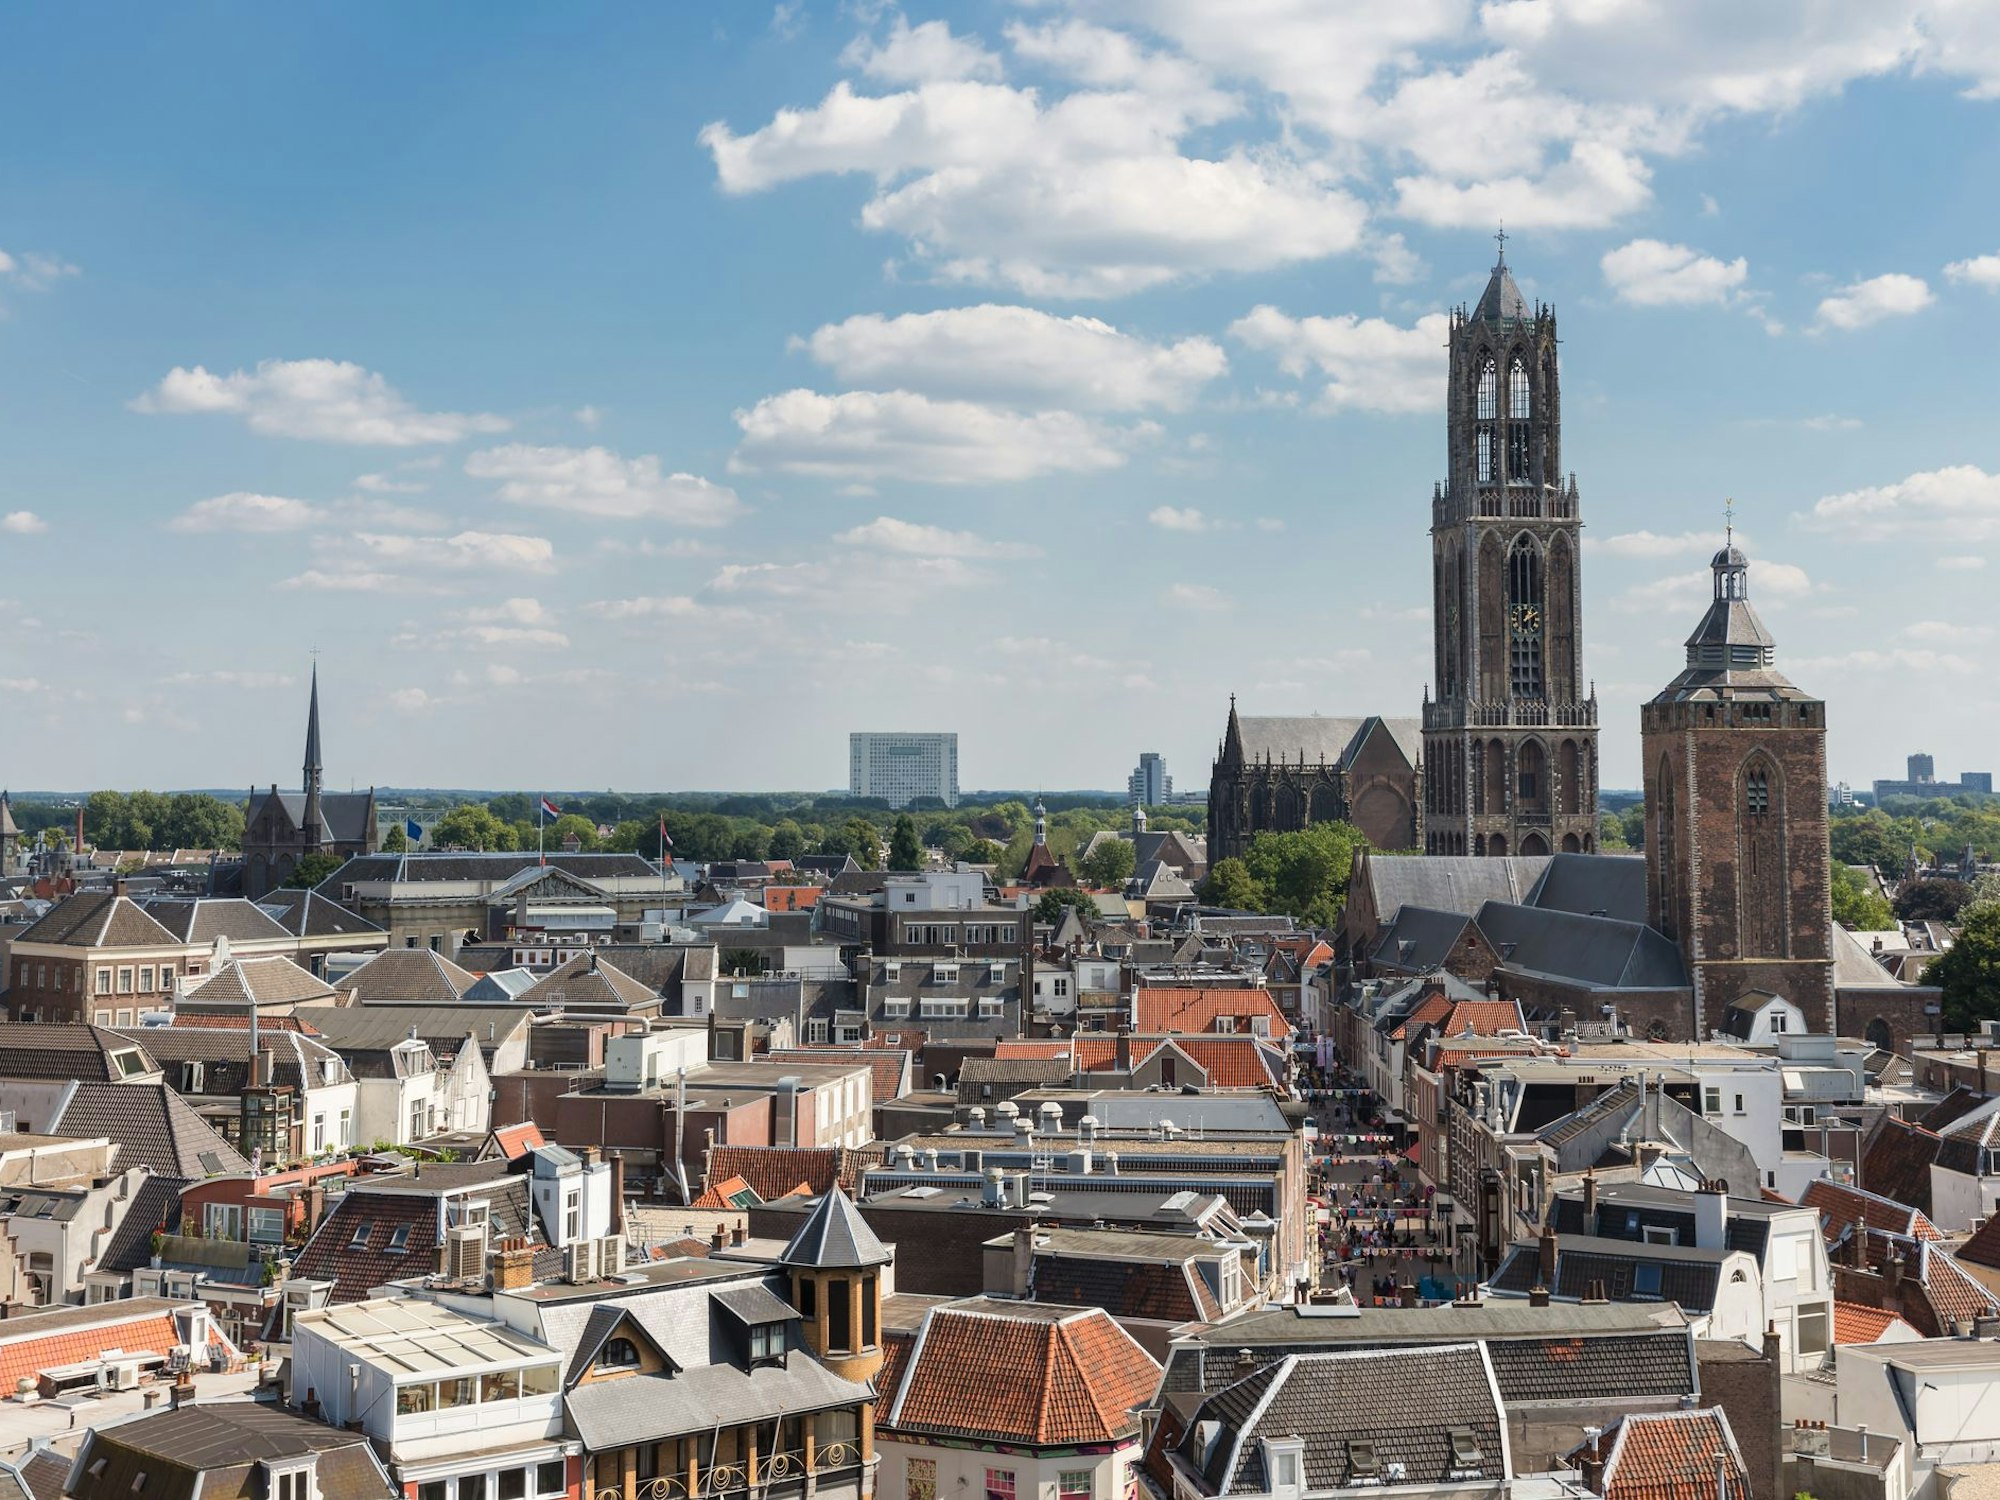 Der beeindruckende Domturm misst 112 Meter und ist das Wahrzeichen der niederländischen Stadt Utrecht.